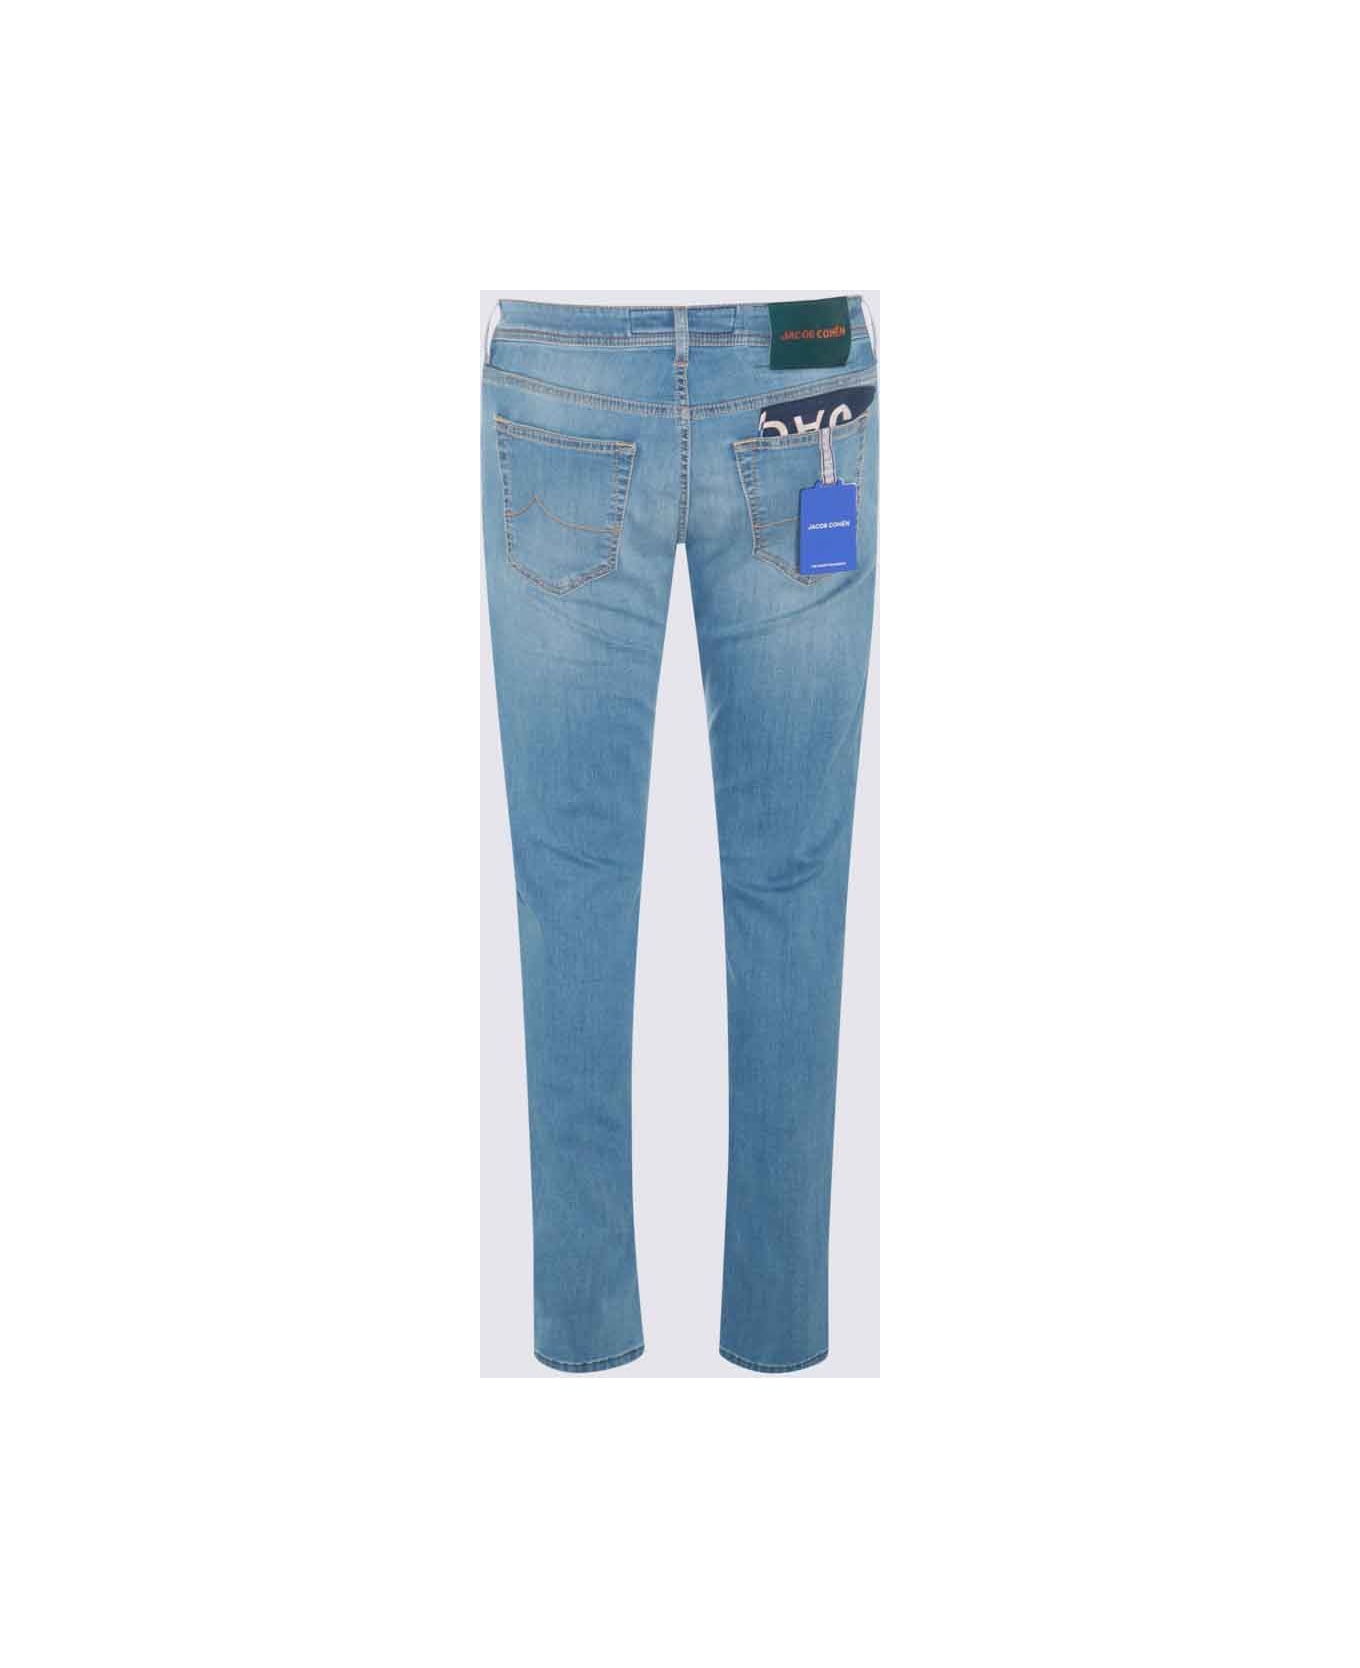 Jacob Cohen Light Blue Cotton Denim Jeans - DENIM